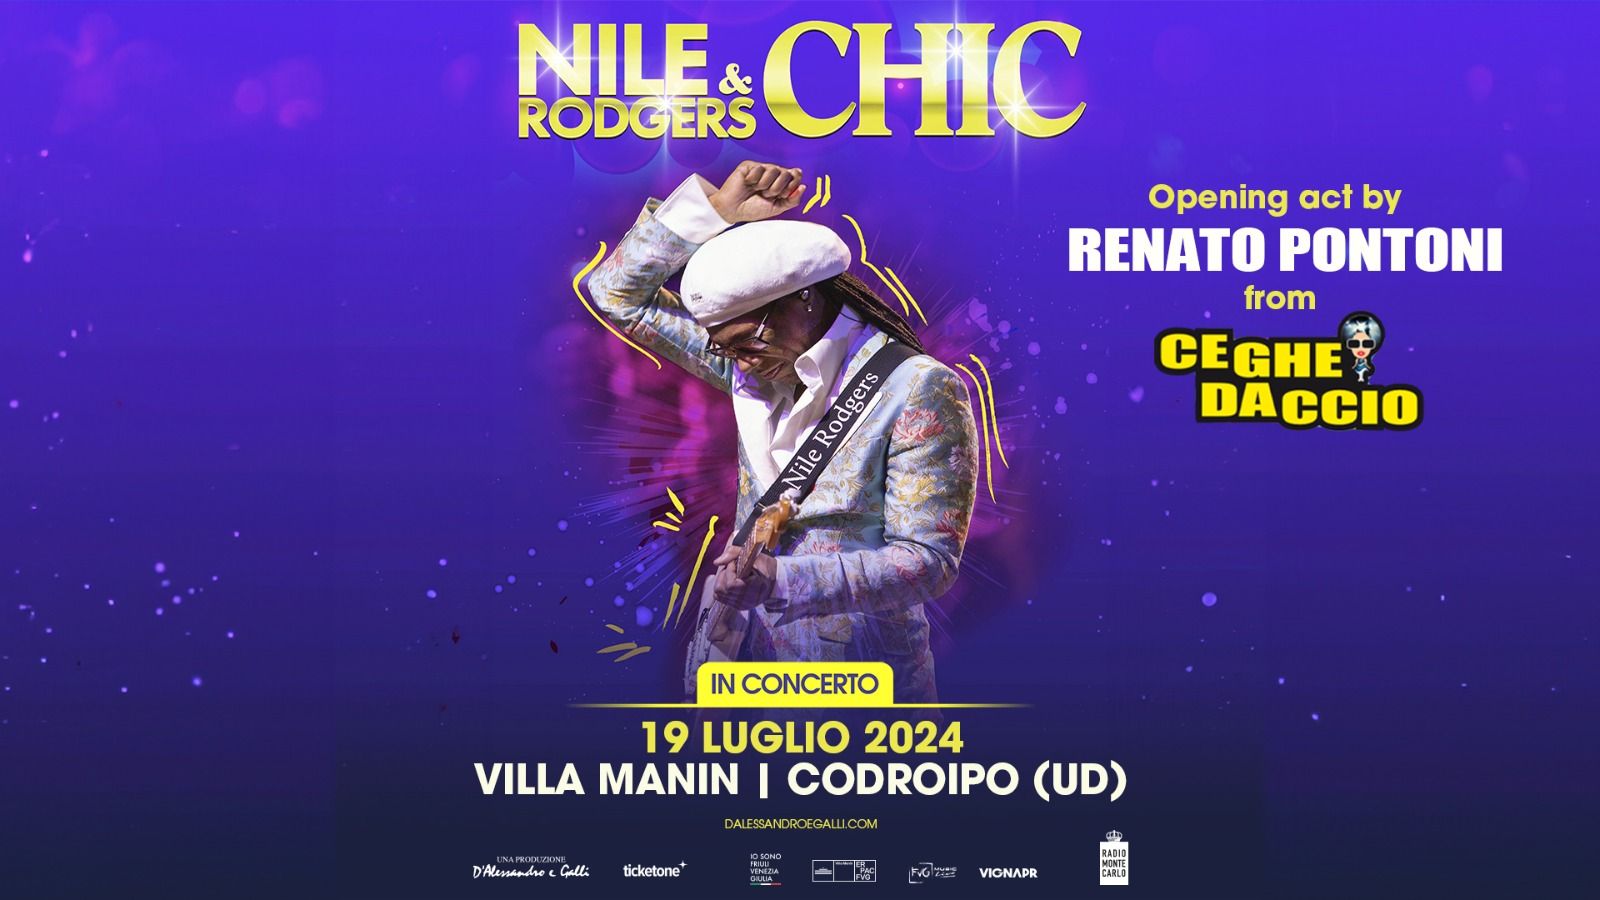 VENERDÌ 19 LUGLIO A VILLA MANIN va in scena il concerto dell'estate con NILE RODGERS & CHIC: oltre 4.000 biglietti già venduti